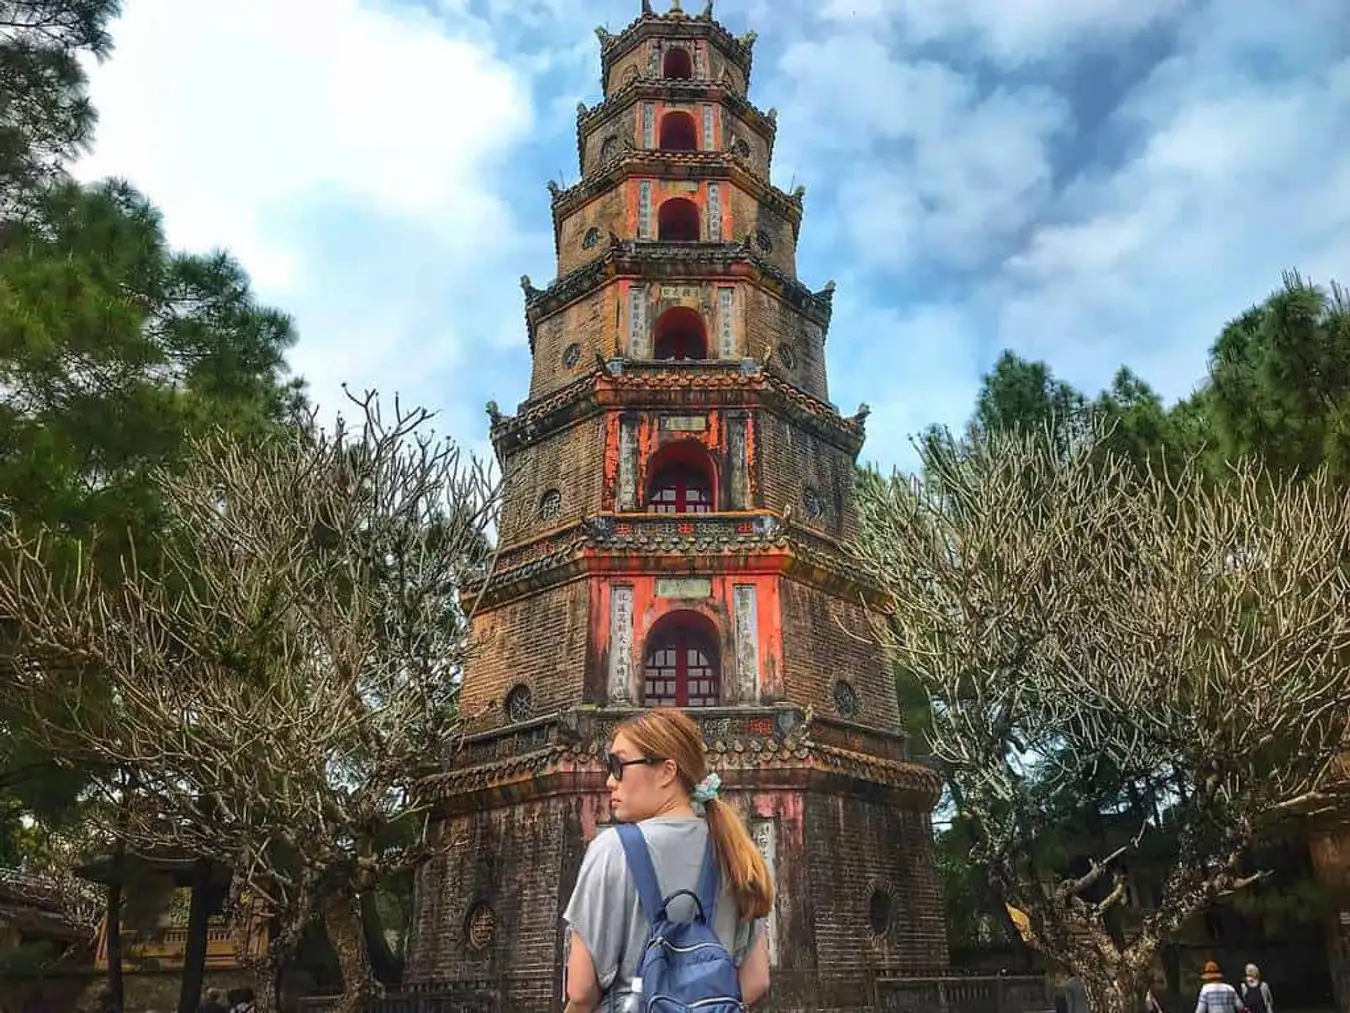 Tháp phước Duyên 7 tầng nổi tiếng của chùa Thiên Mụ.